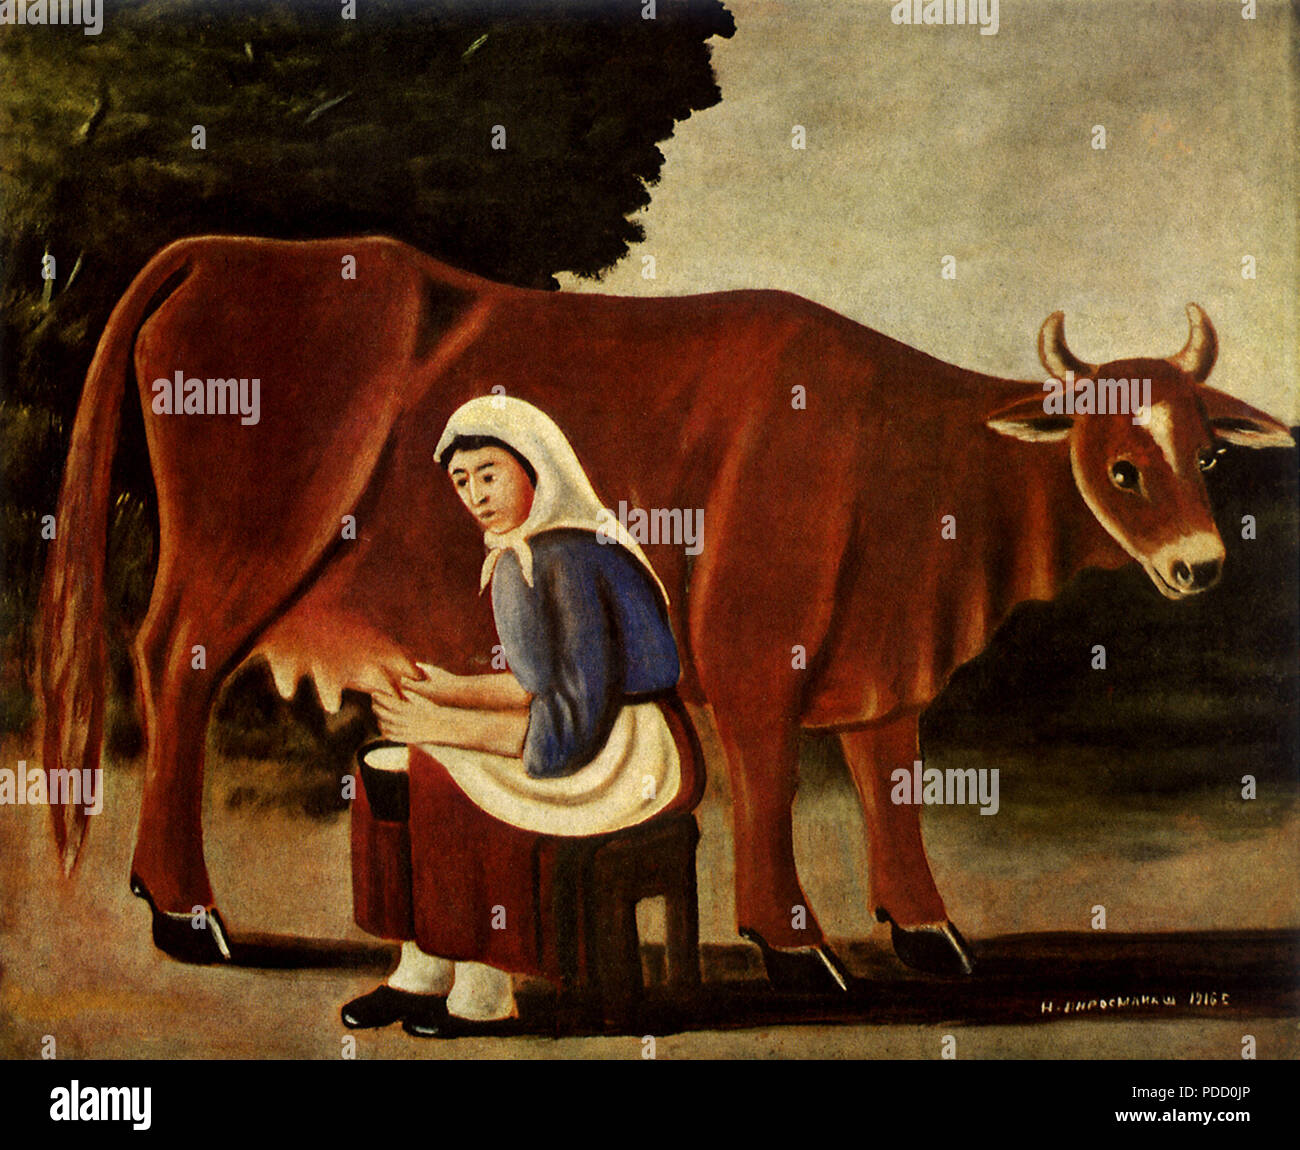 Woman Milking Cow, Pirosmani, Niko, 1916. Stock Photo